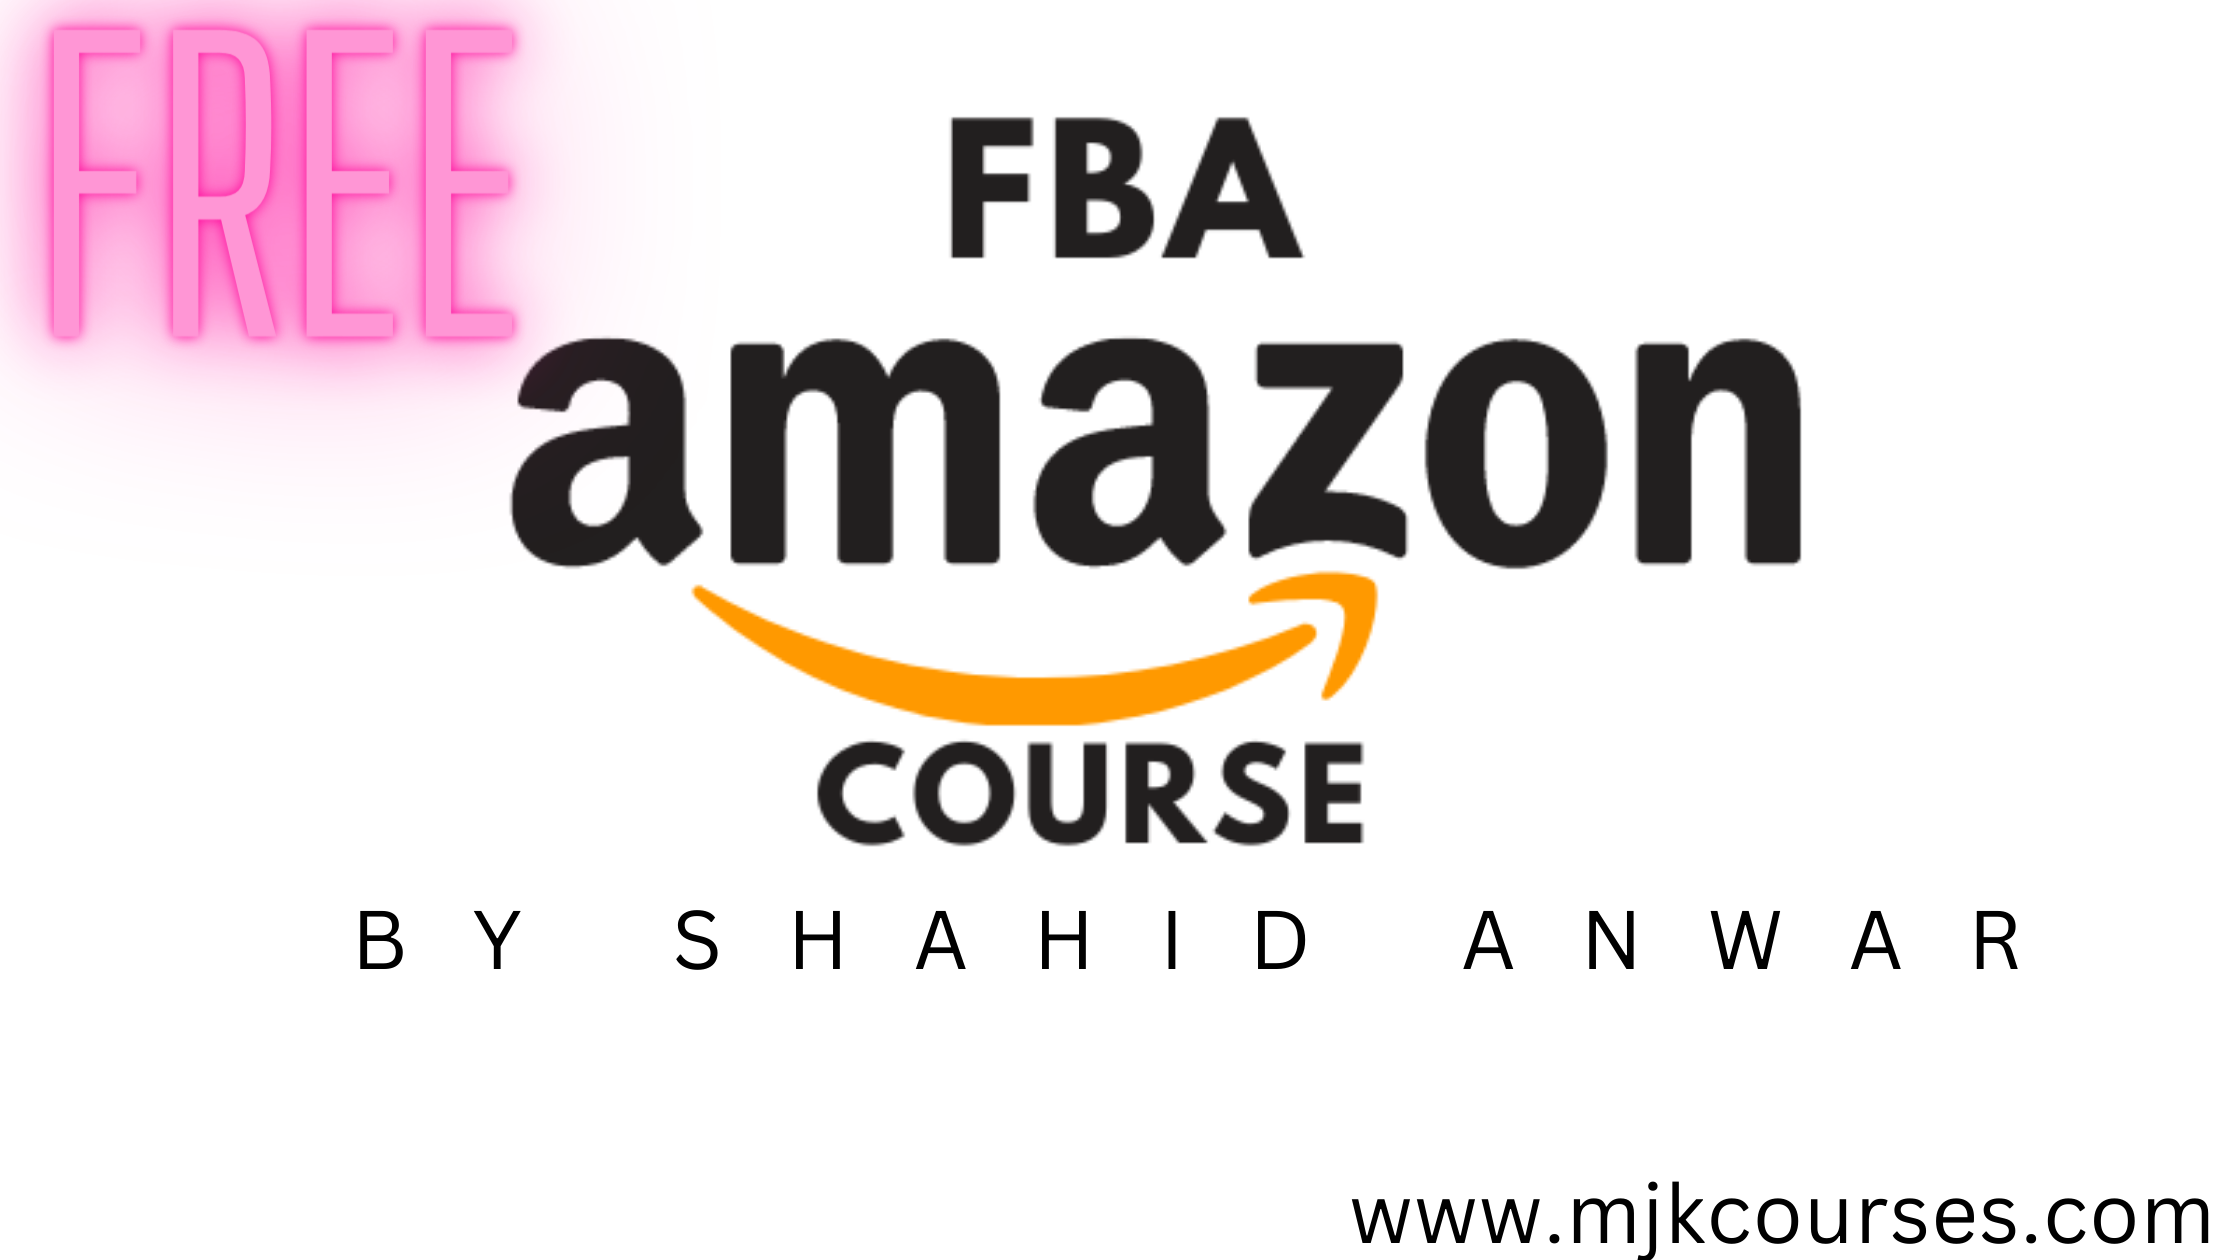 Shahid Anwar Dropshipping Course - Shahid Anwar